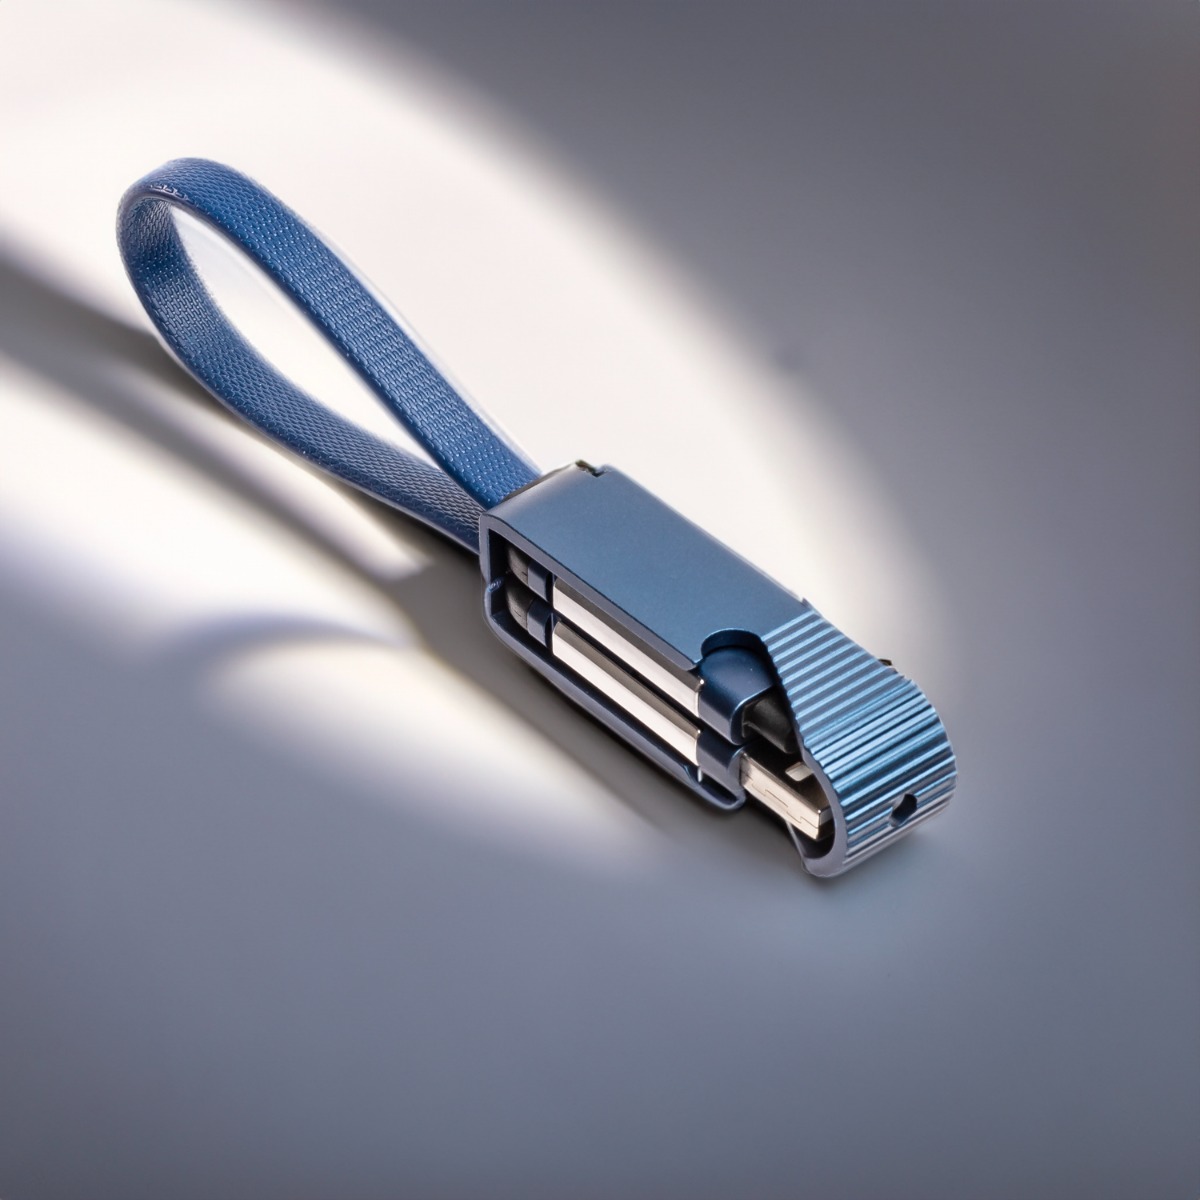 Detailansicht des ConnectEx Elegance USB-Ladekabels